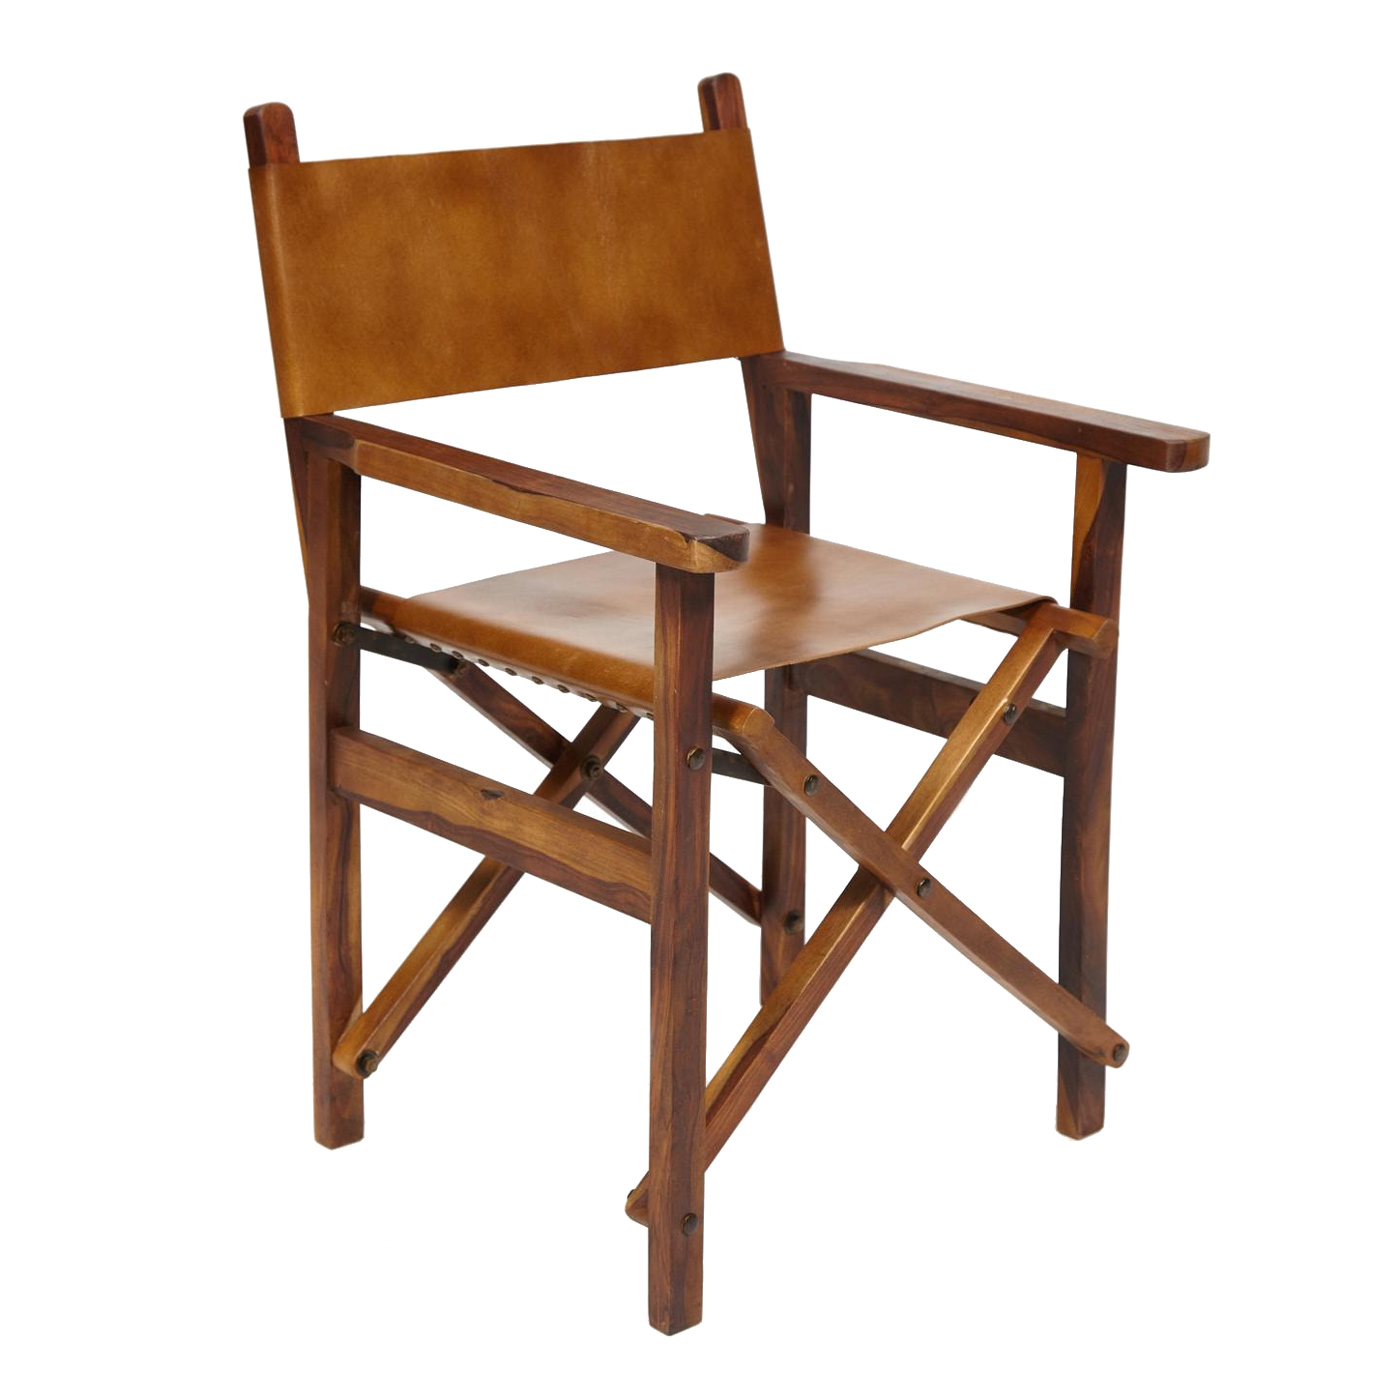 складной стул со спинкой | Складной стул, Стул, Складные стулья